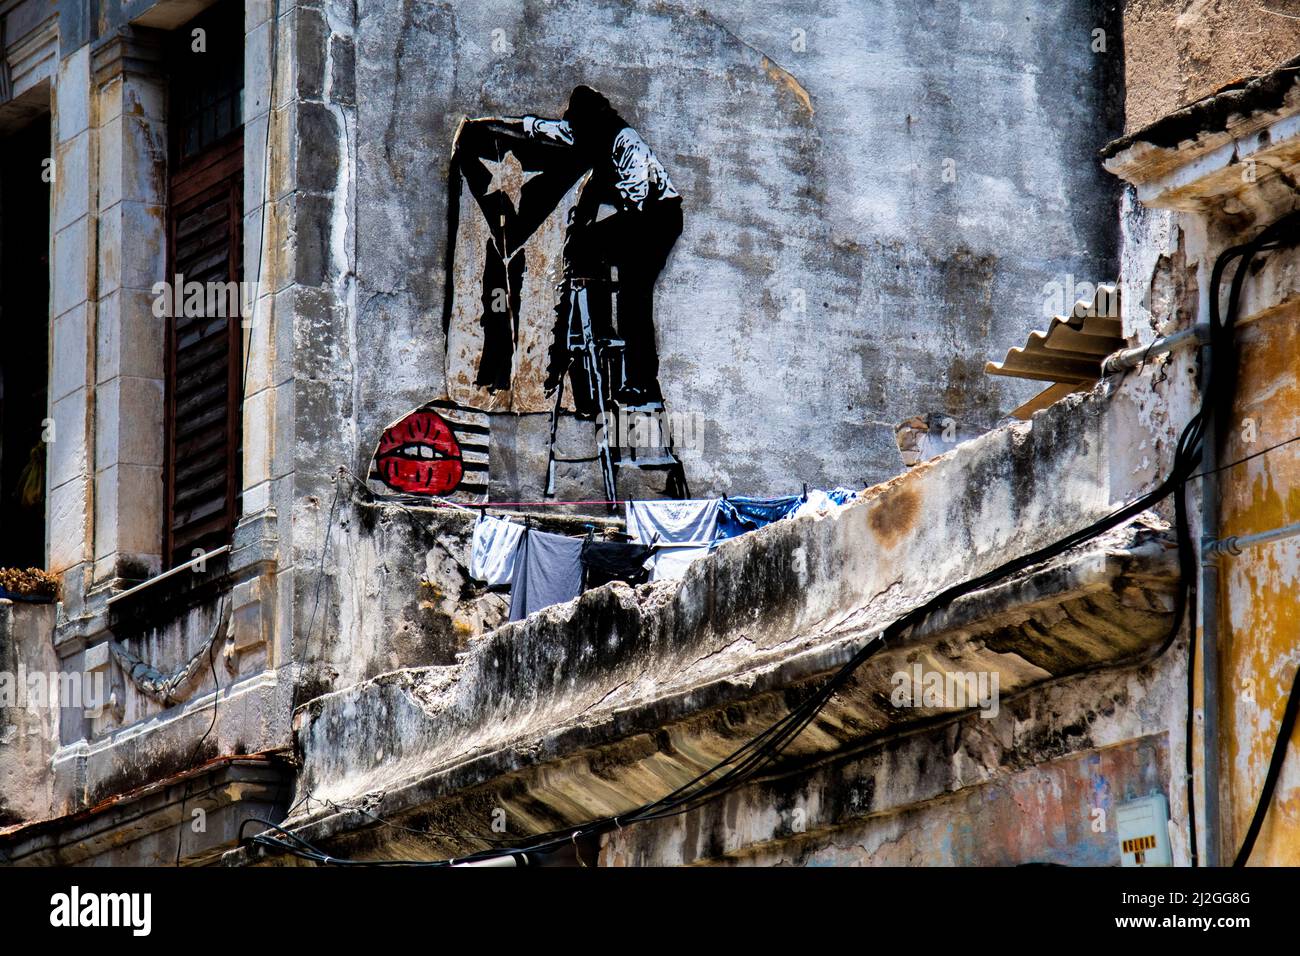 Interessante opera murale murale sul balcone di una casa a l'Avana, Cuba con una bandiera cubana in bianco e nero disegnato. Foto Stock